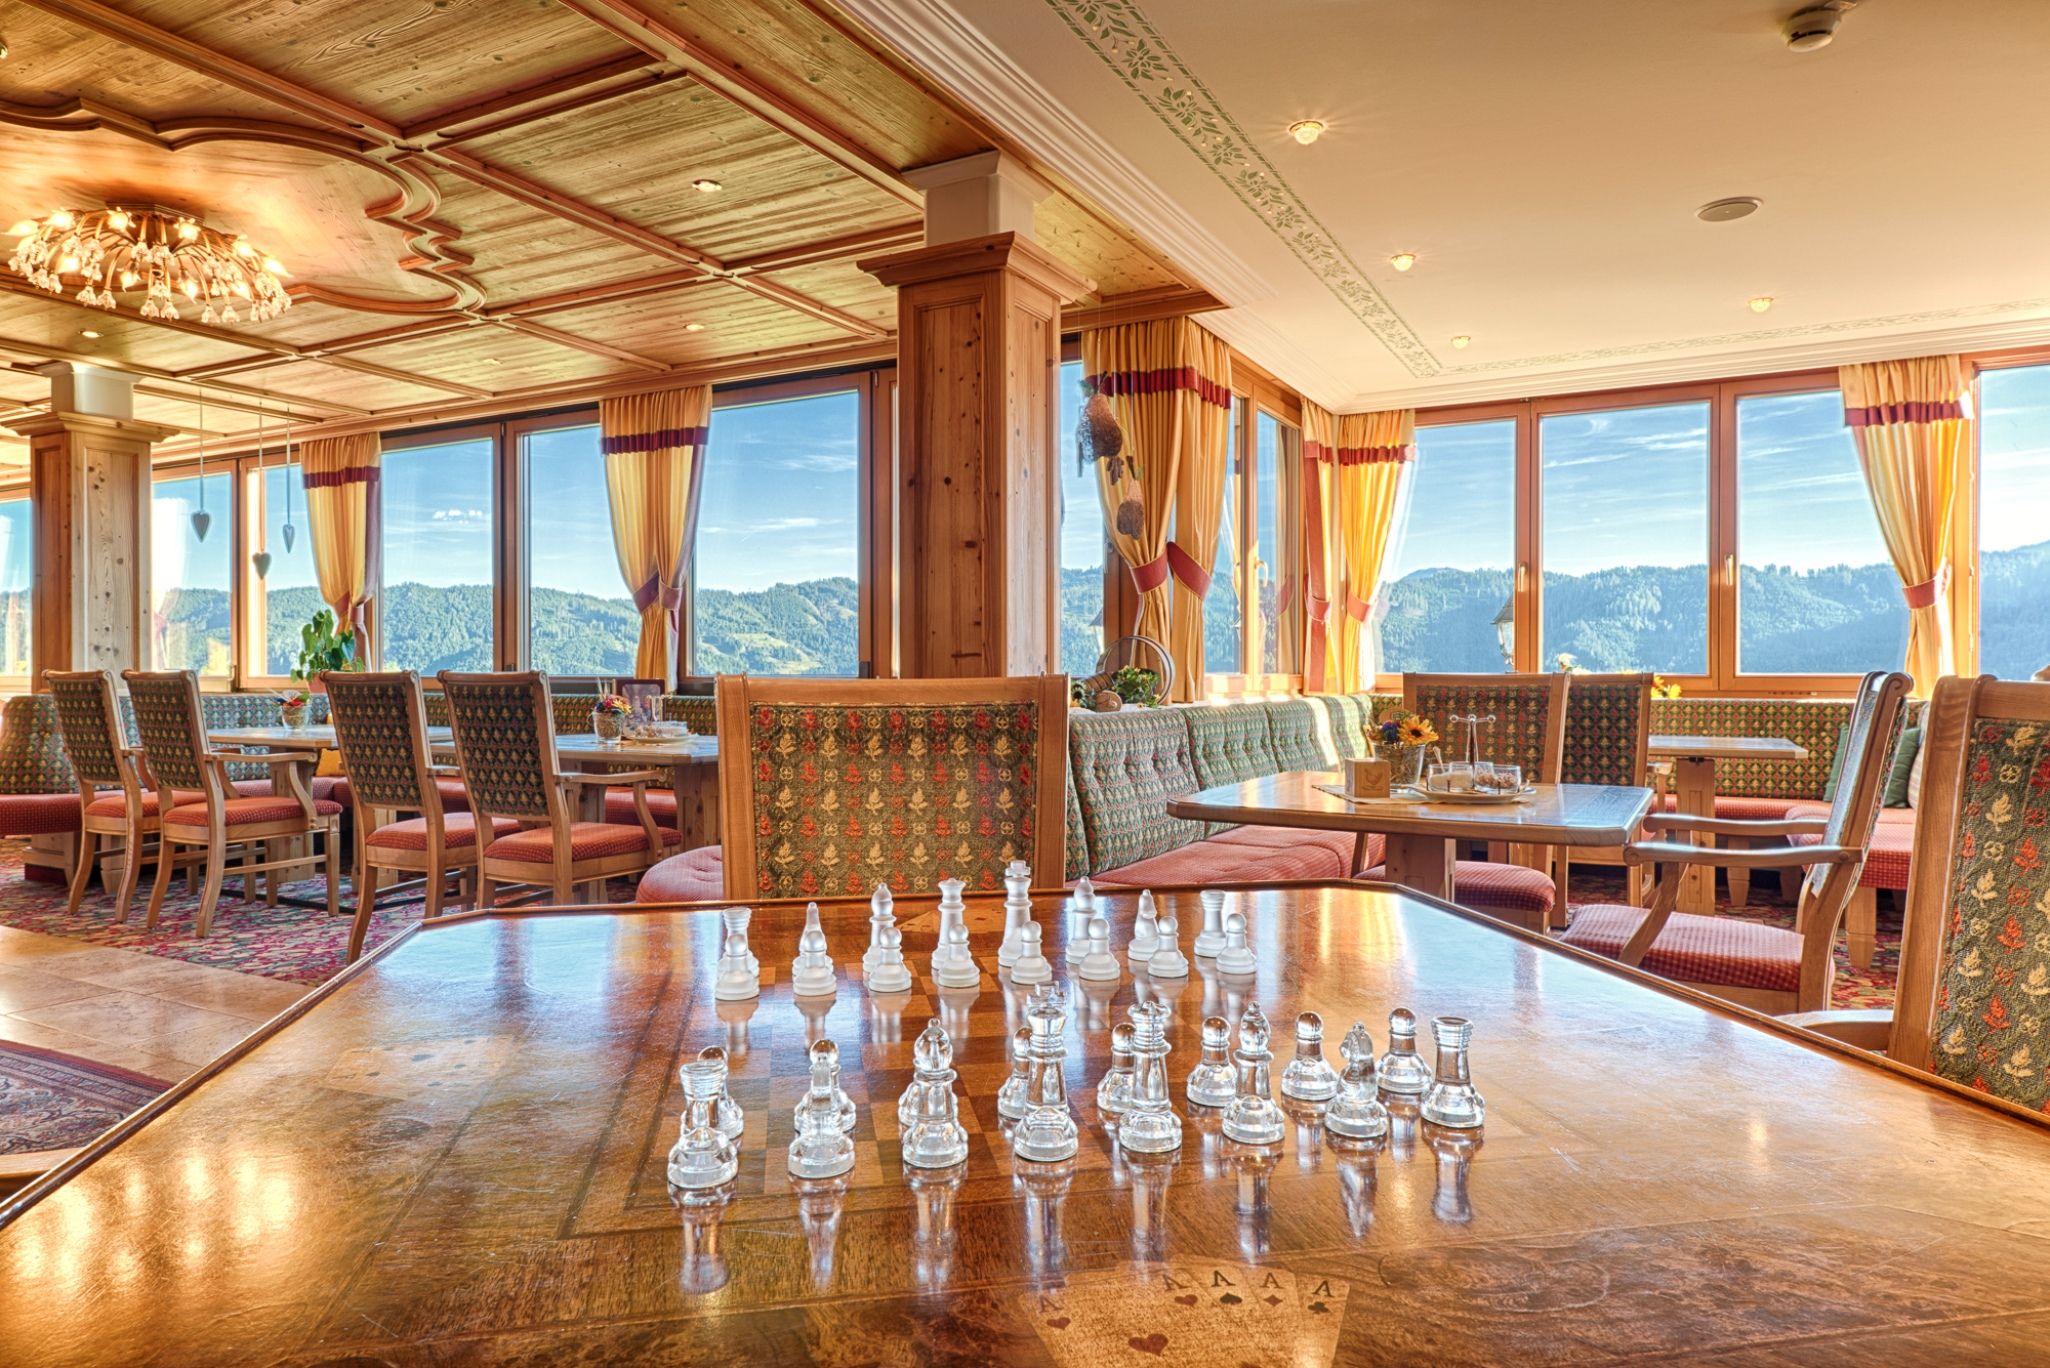 Schach im Hotel Bergheimat © Hotel Bergheimat